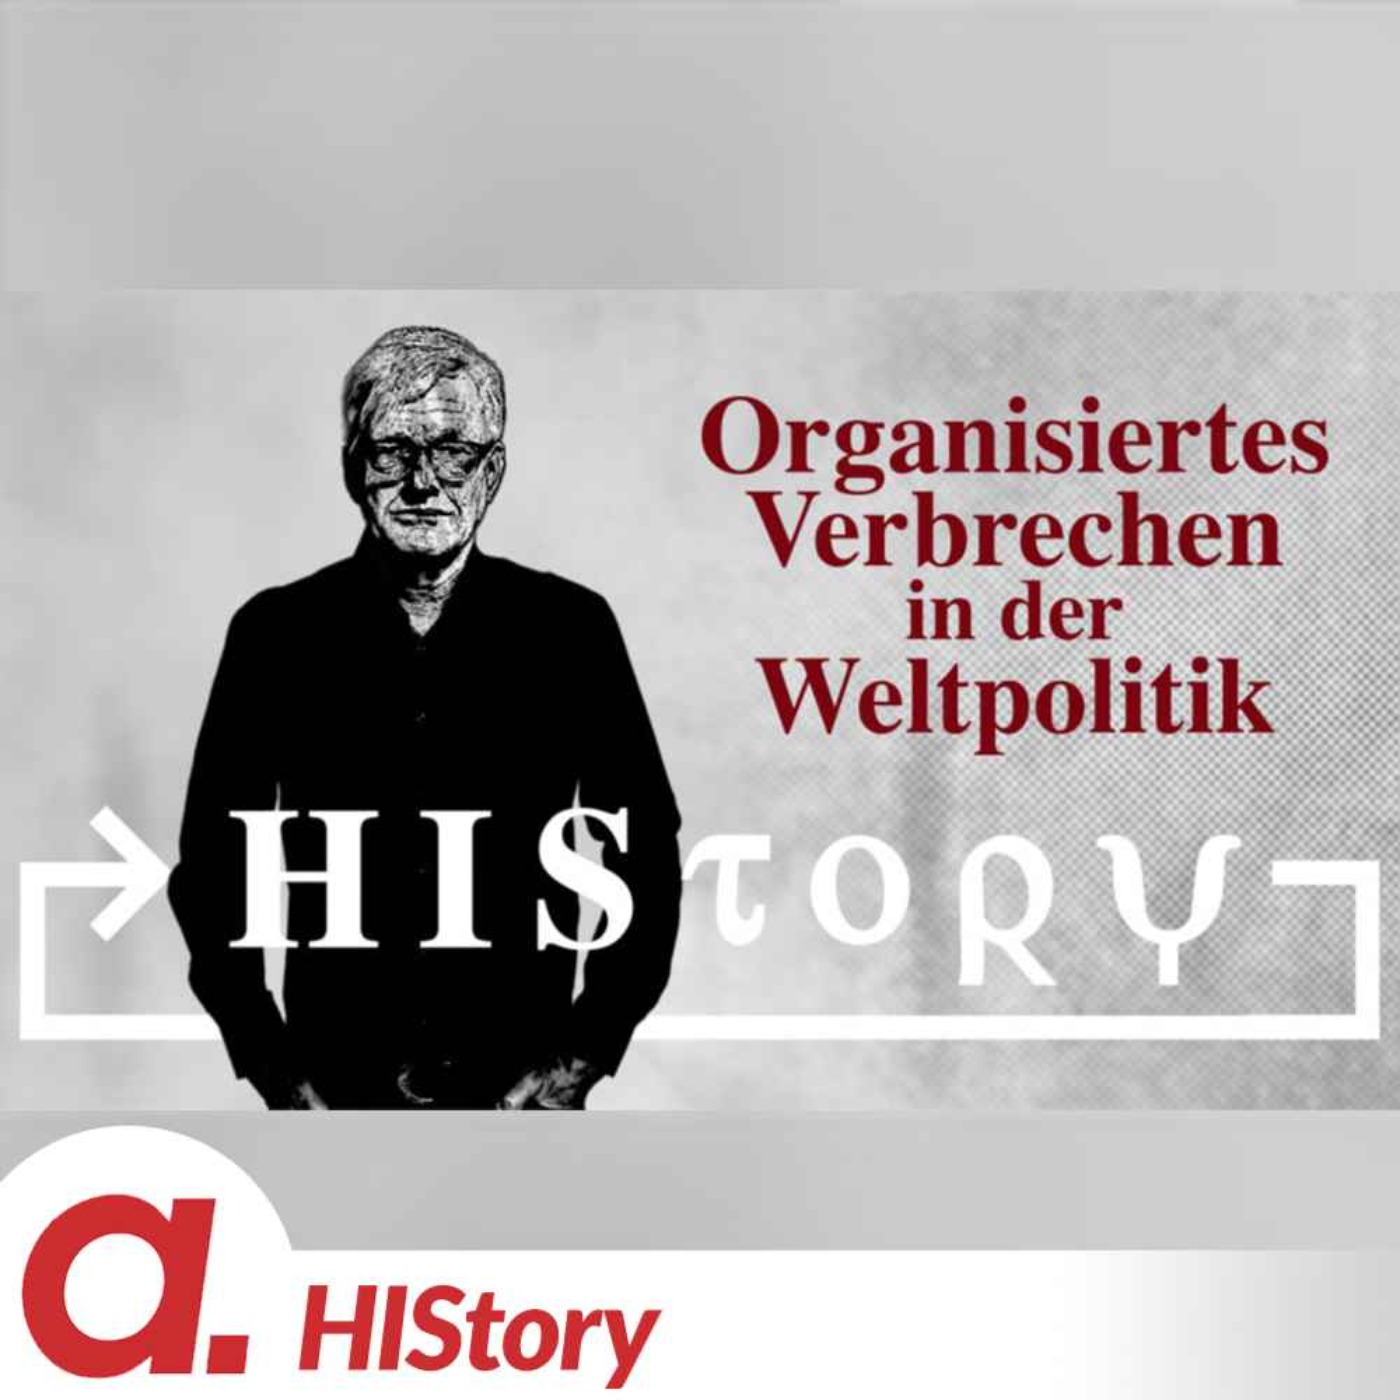 HIStory: Organisiertes Verbrechen in der Weltpolitik